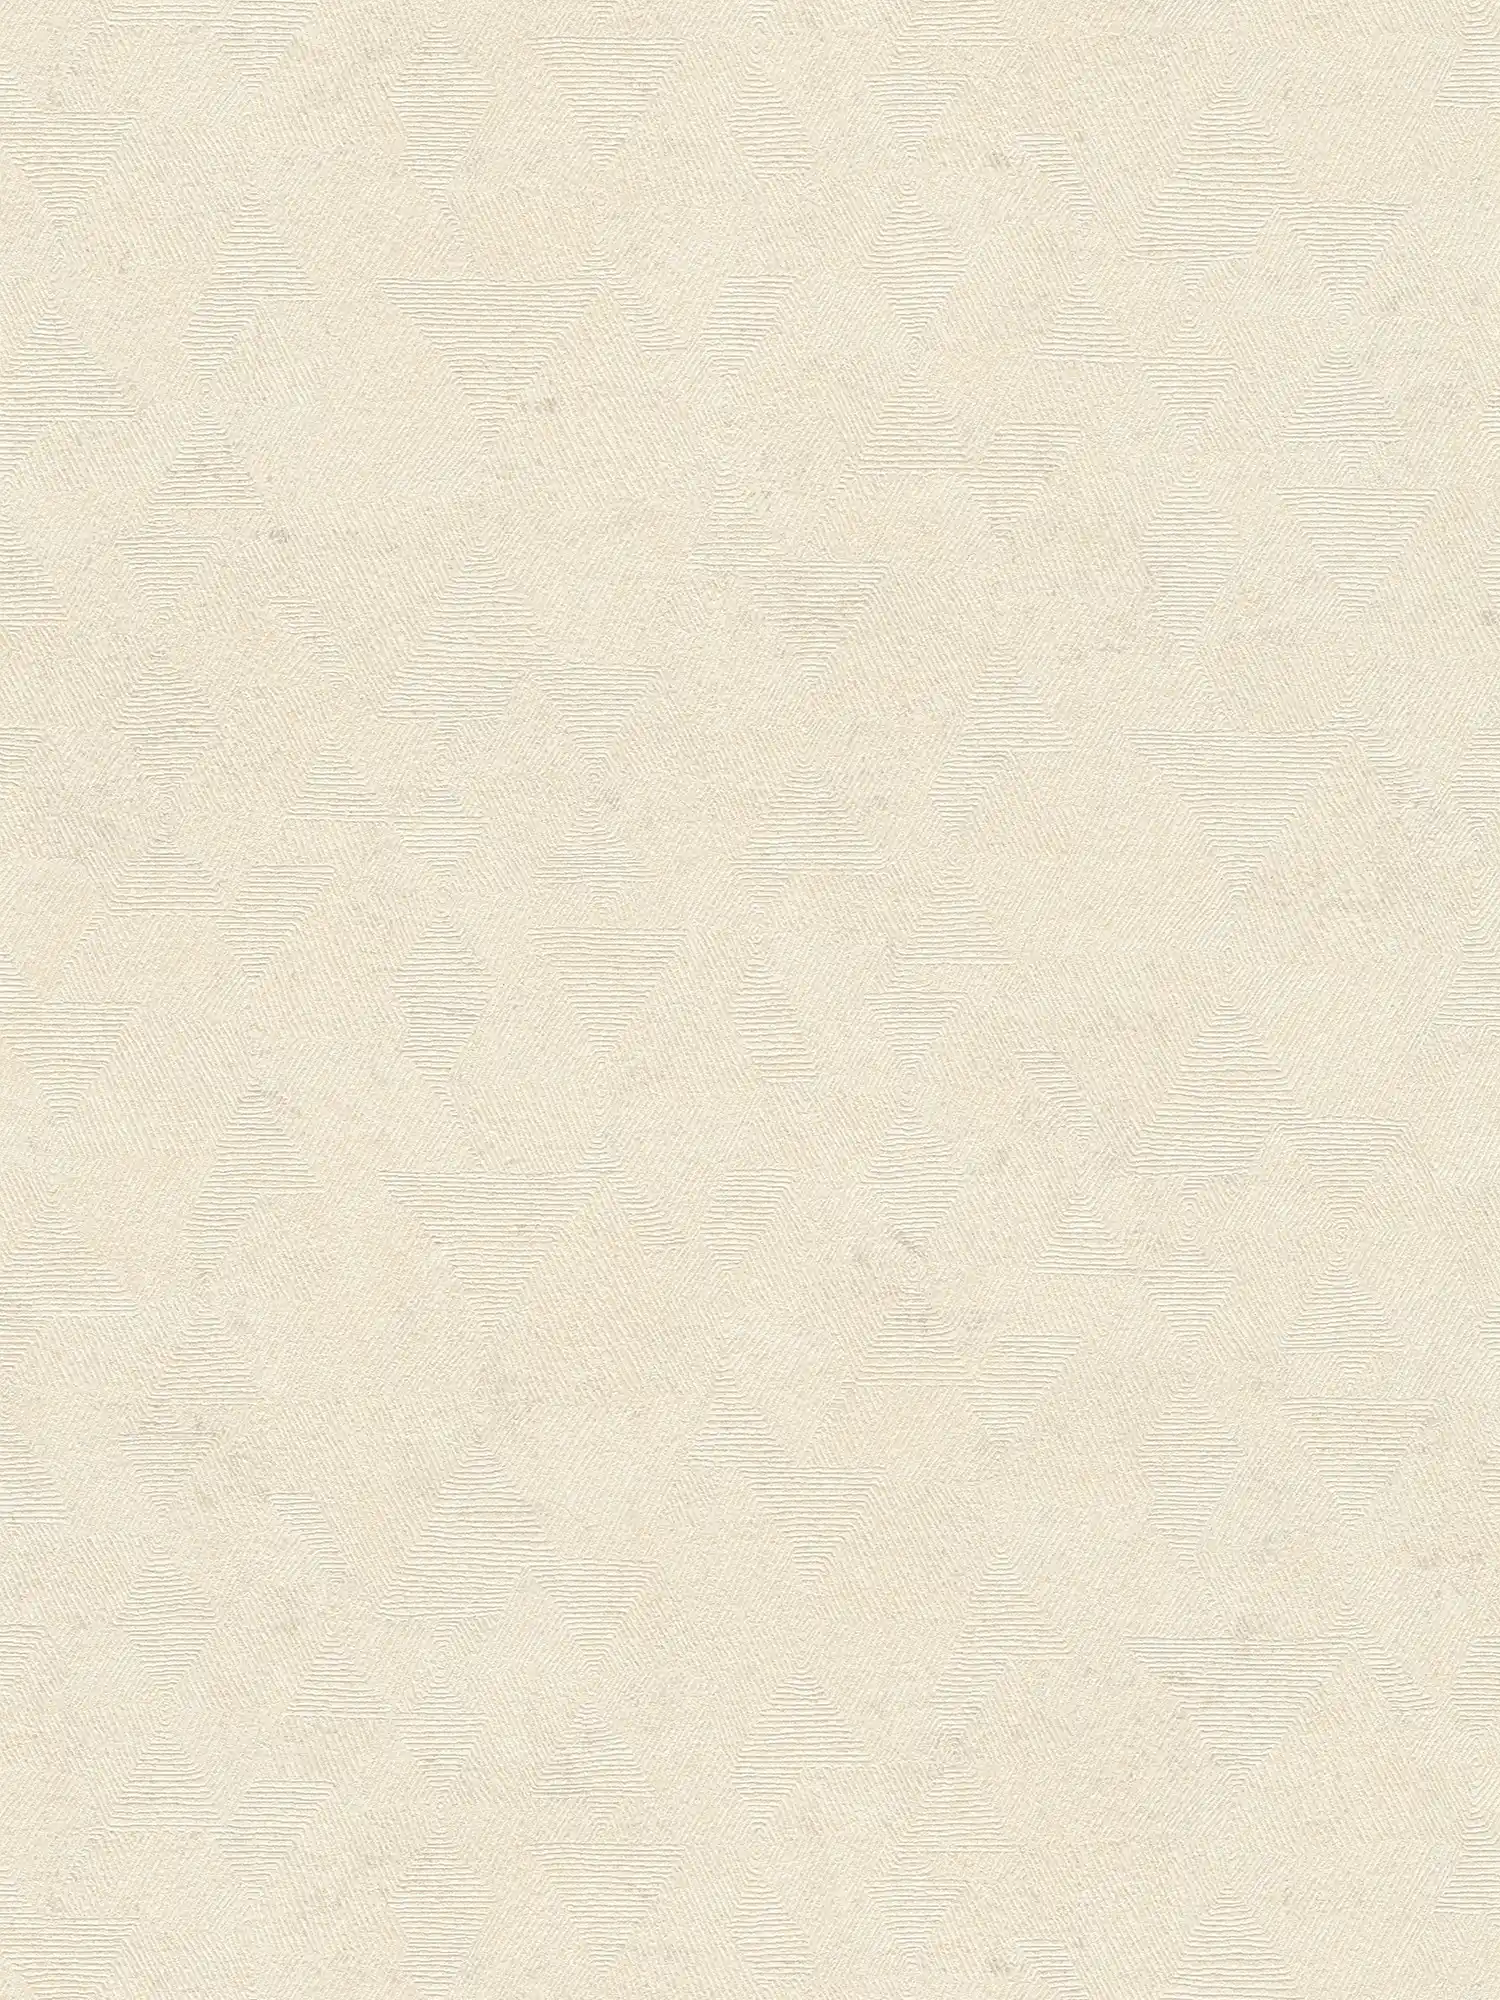 Carta da parati melange con struttura grafica in stile etno - beige, metallizzato
